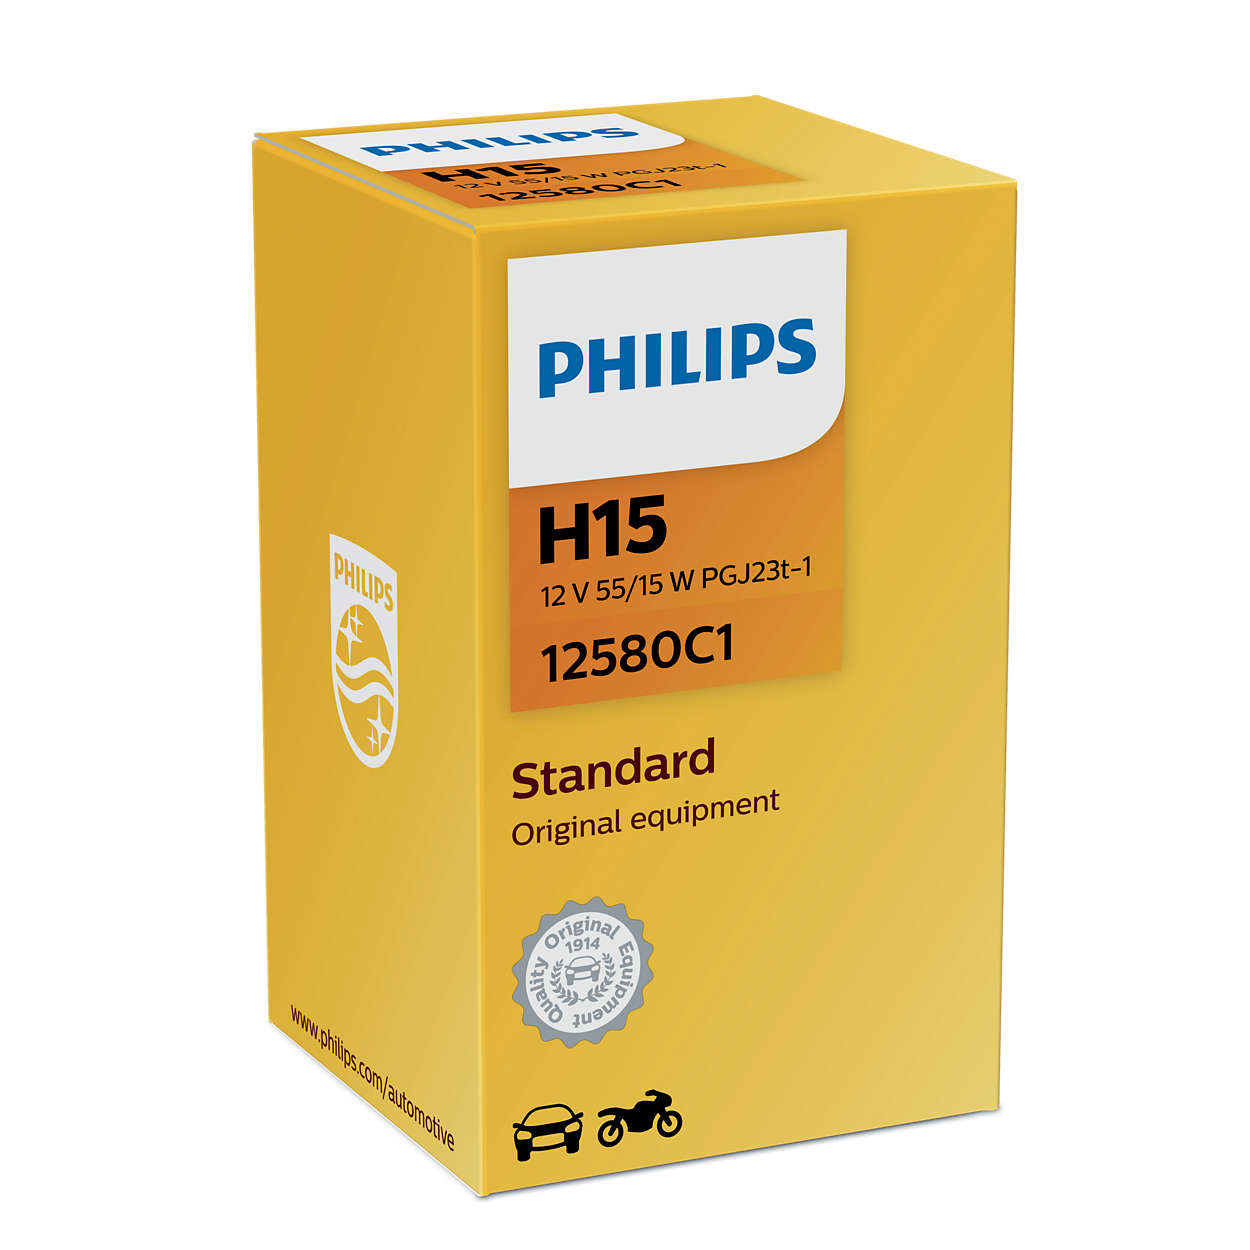 Philips H15 12V